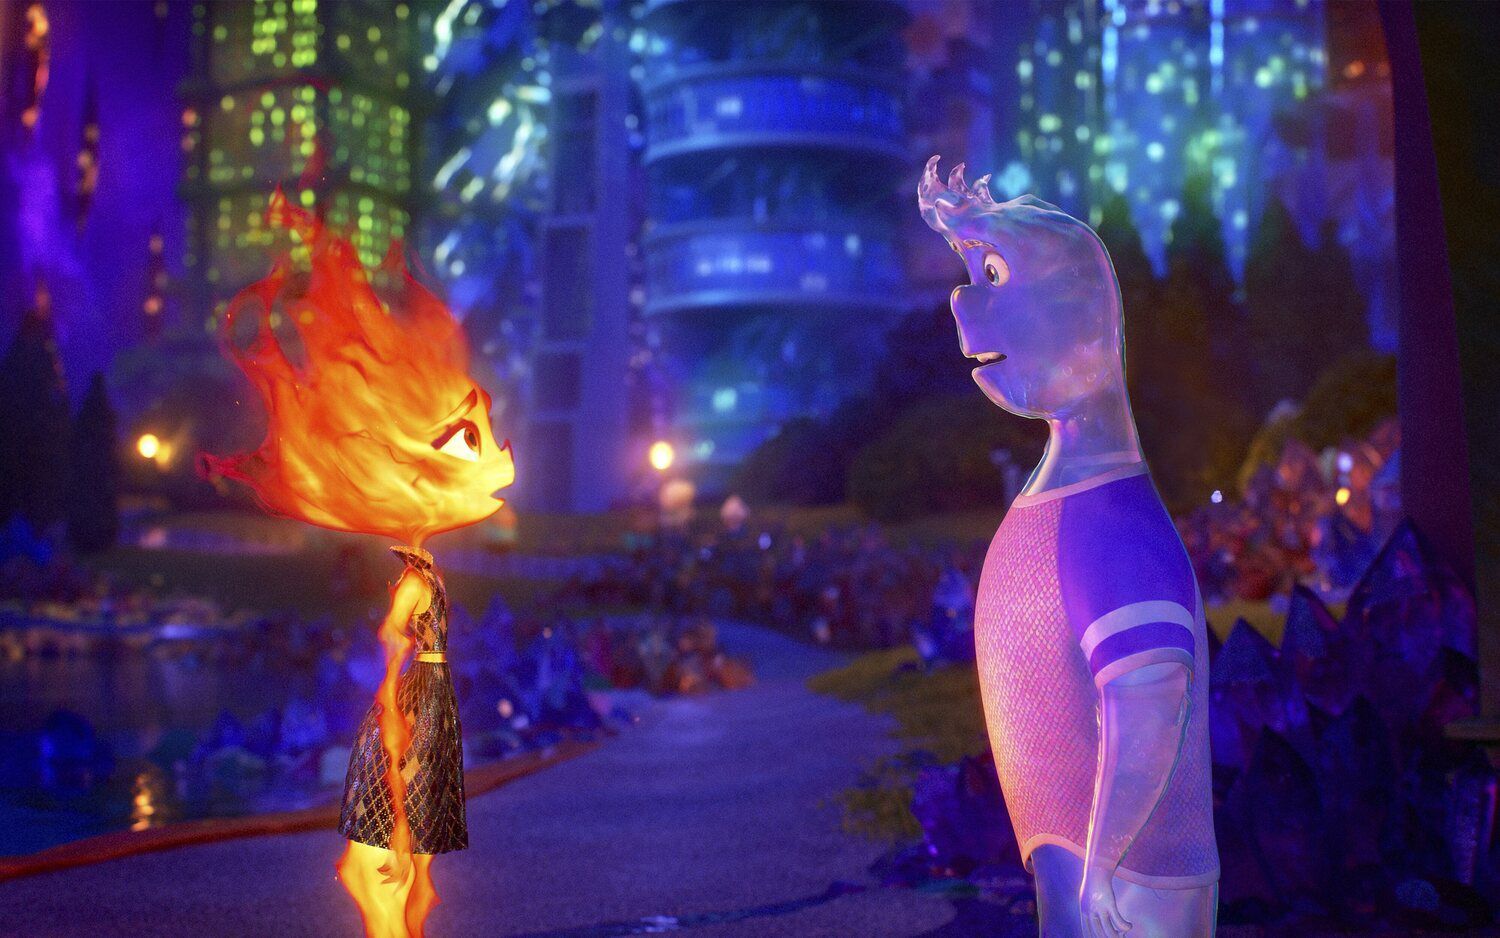 La trama principal de la película se cuestiona qué pasaría si el agua y el fuego pudiesen enamorarse. (Disney)